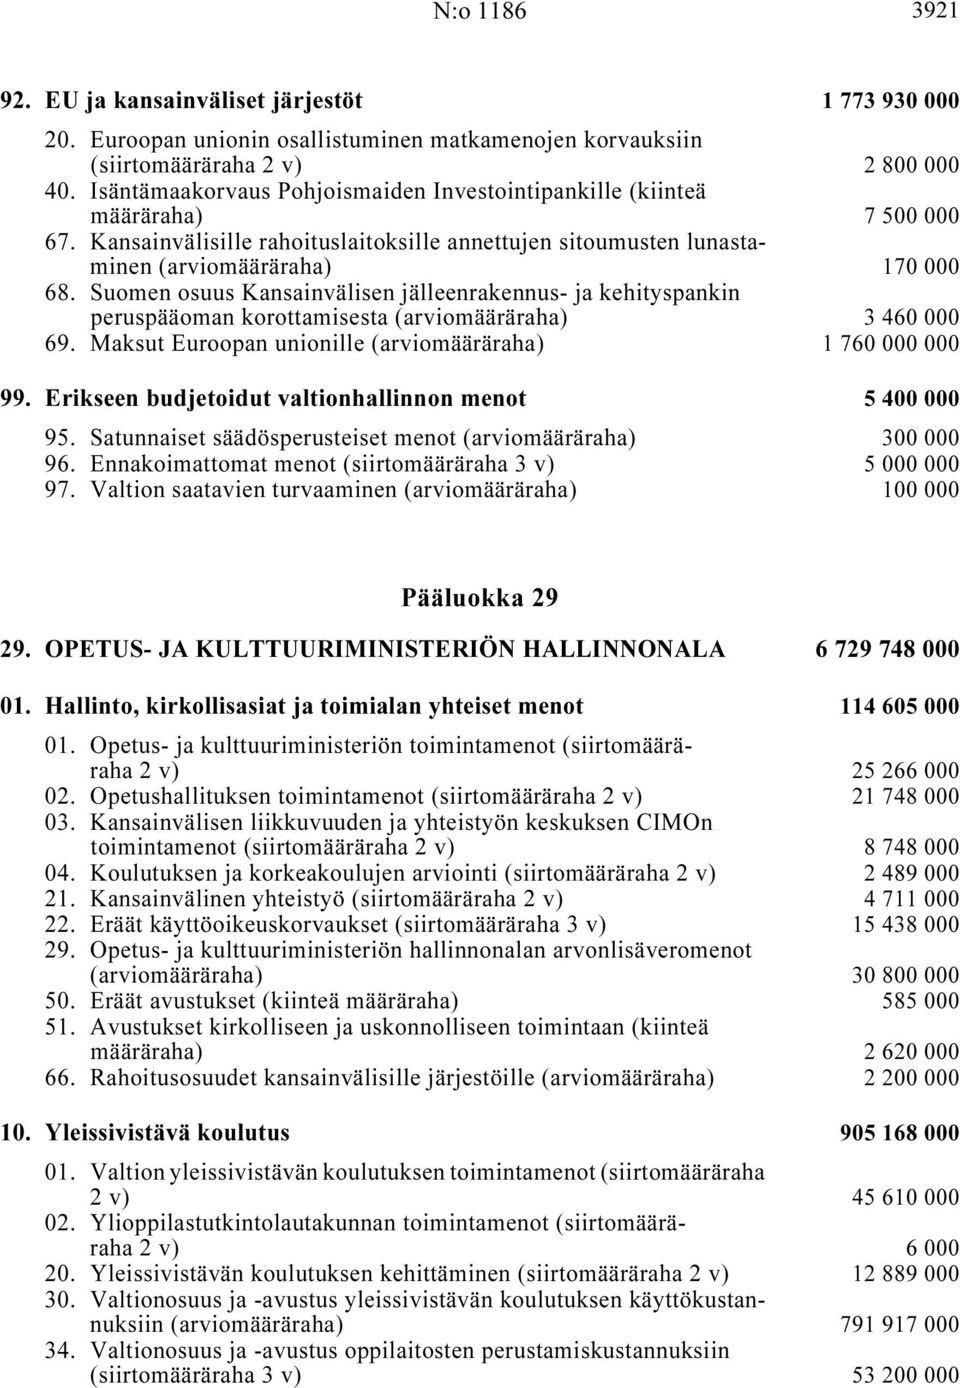 Suomen osuus Kansainvälisen jälleenrakennus- ja kehityspankin peruspääoman korottamisesta (arviomääräraha) i... 3 460 000 69. Maksut Euroopan unionille (arviomääräraha) i... 1760000000 99.